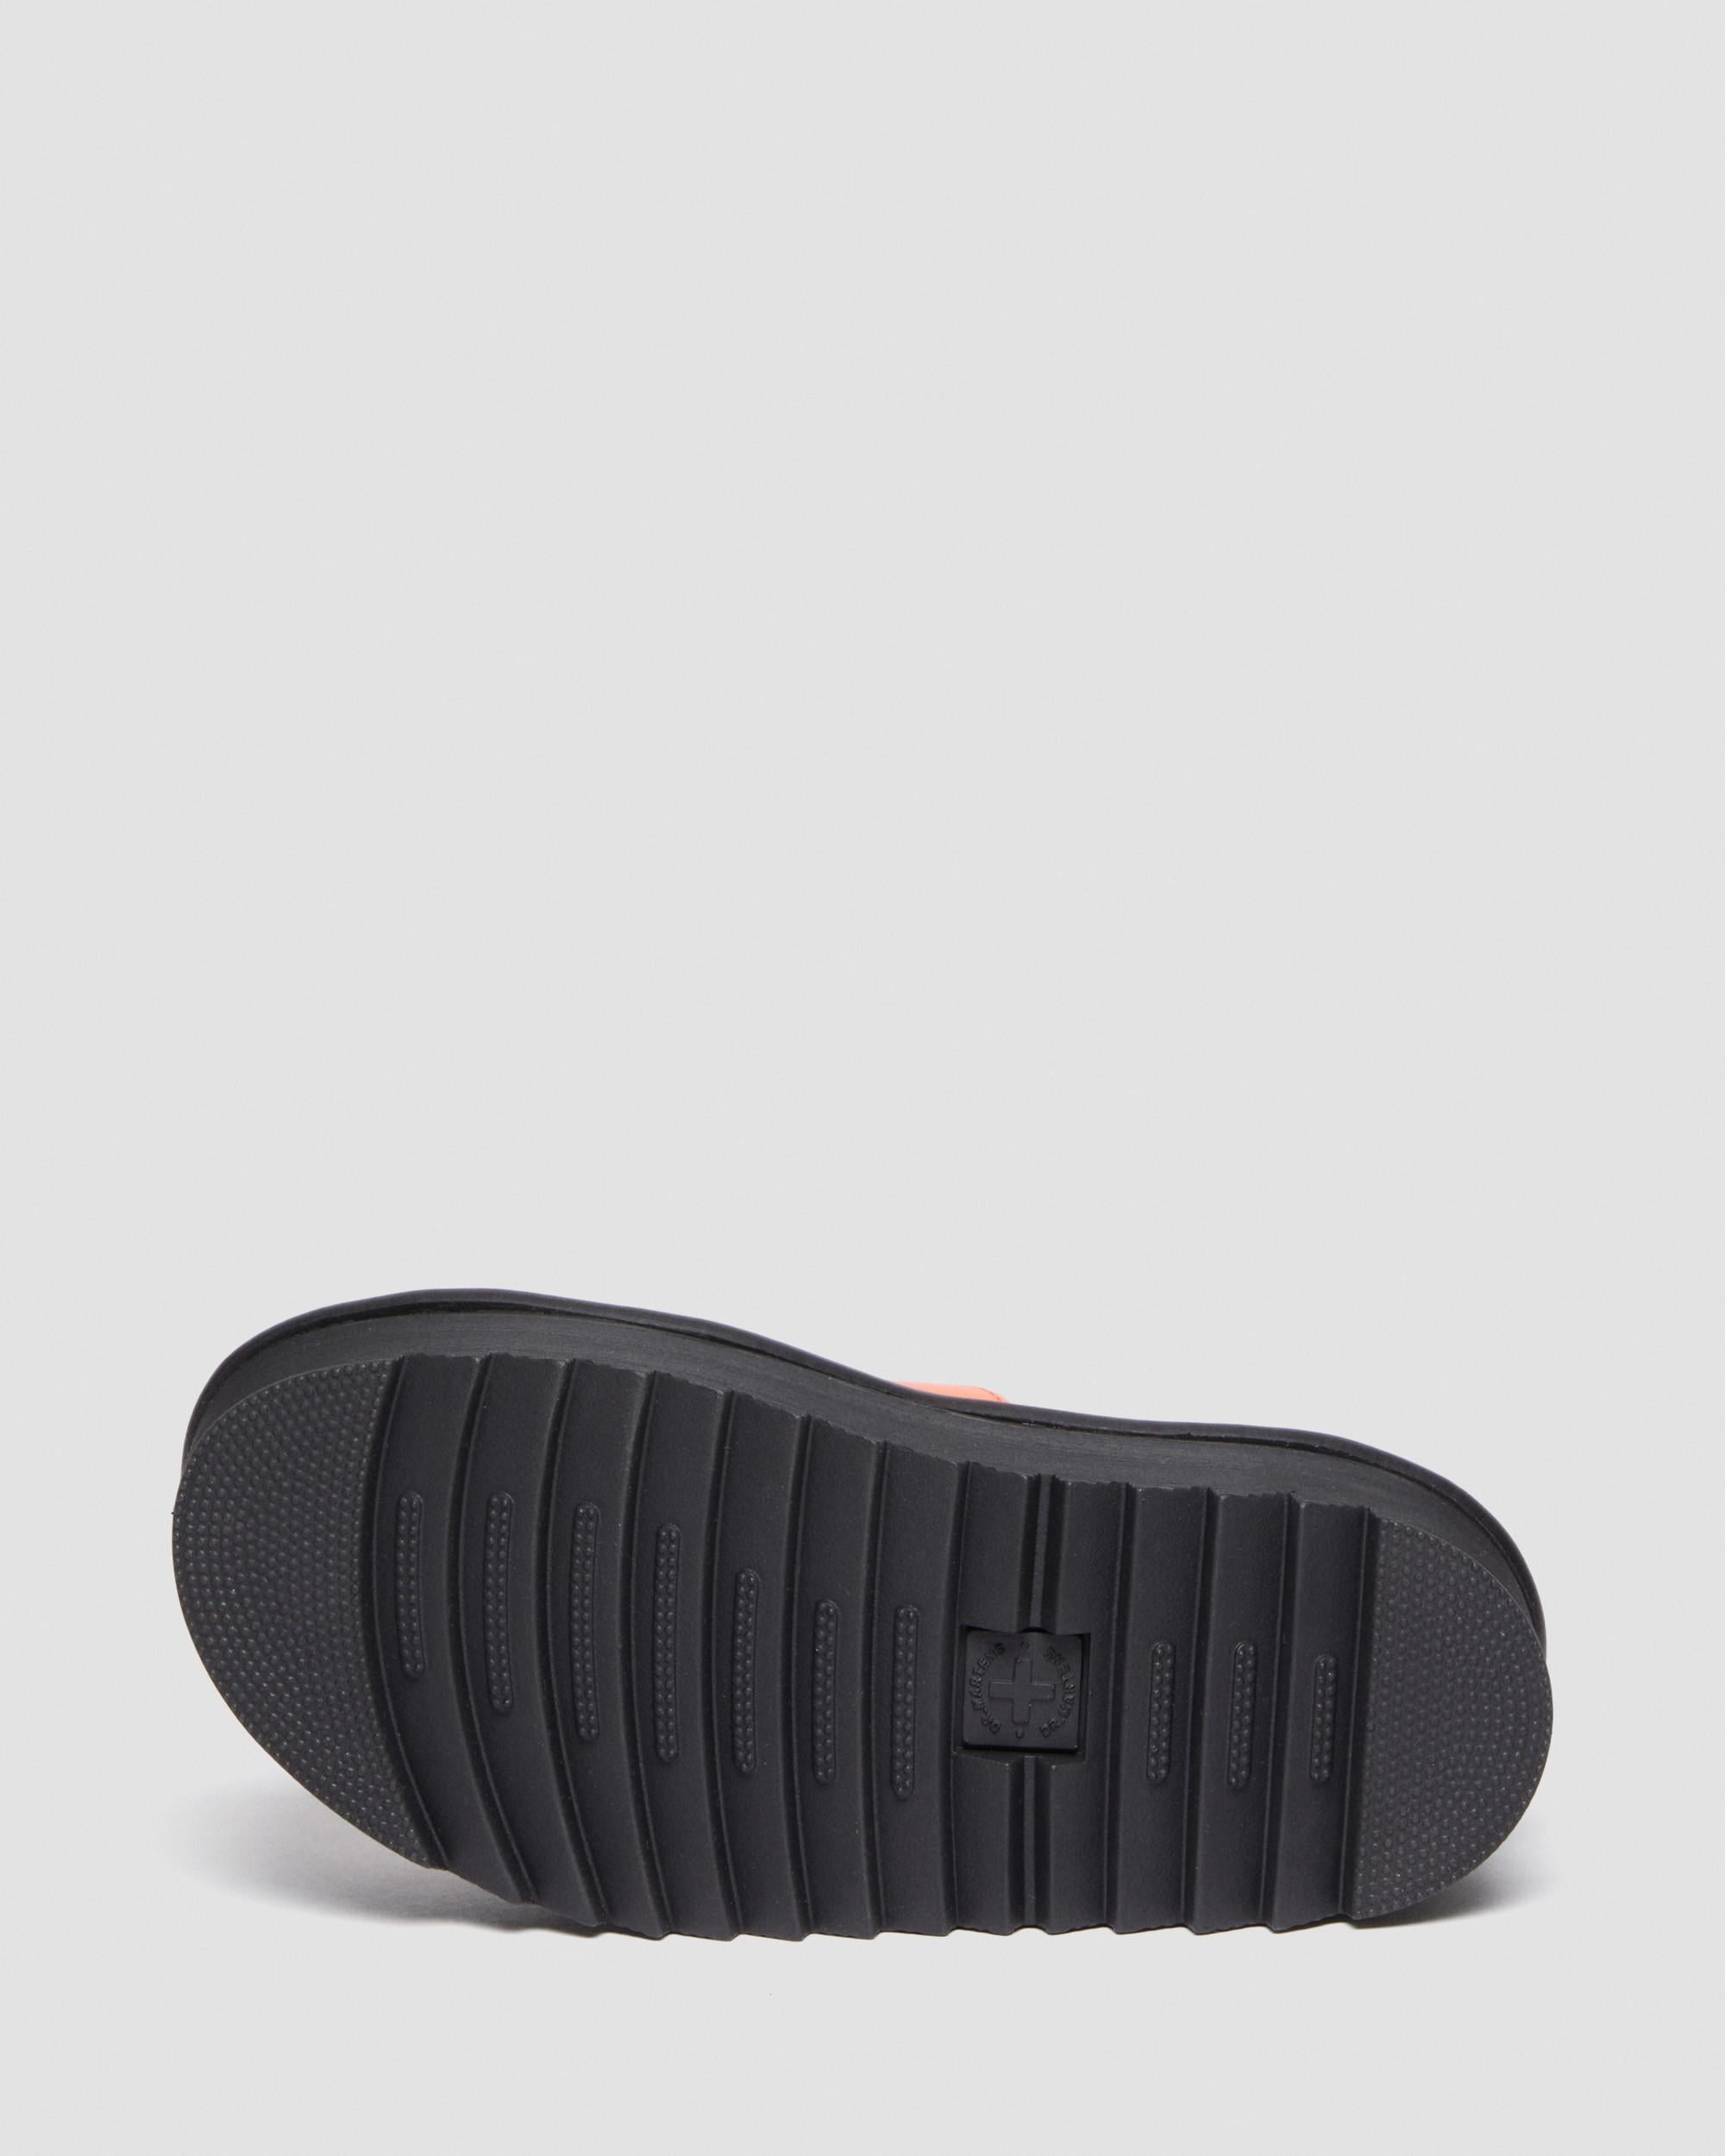 Blaire Quad Pisa Leather Platform Sandals